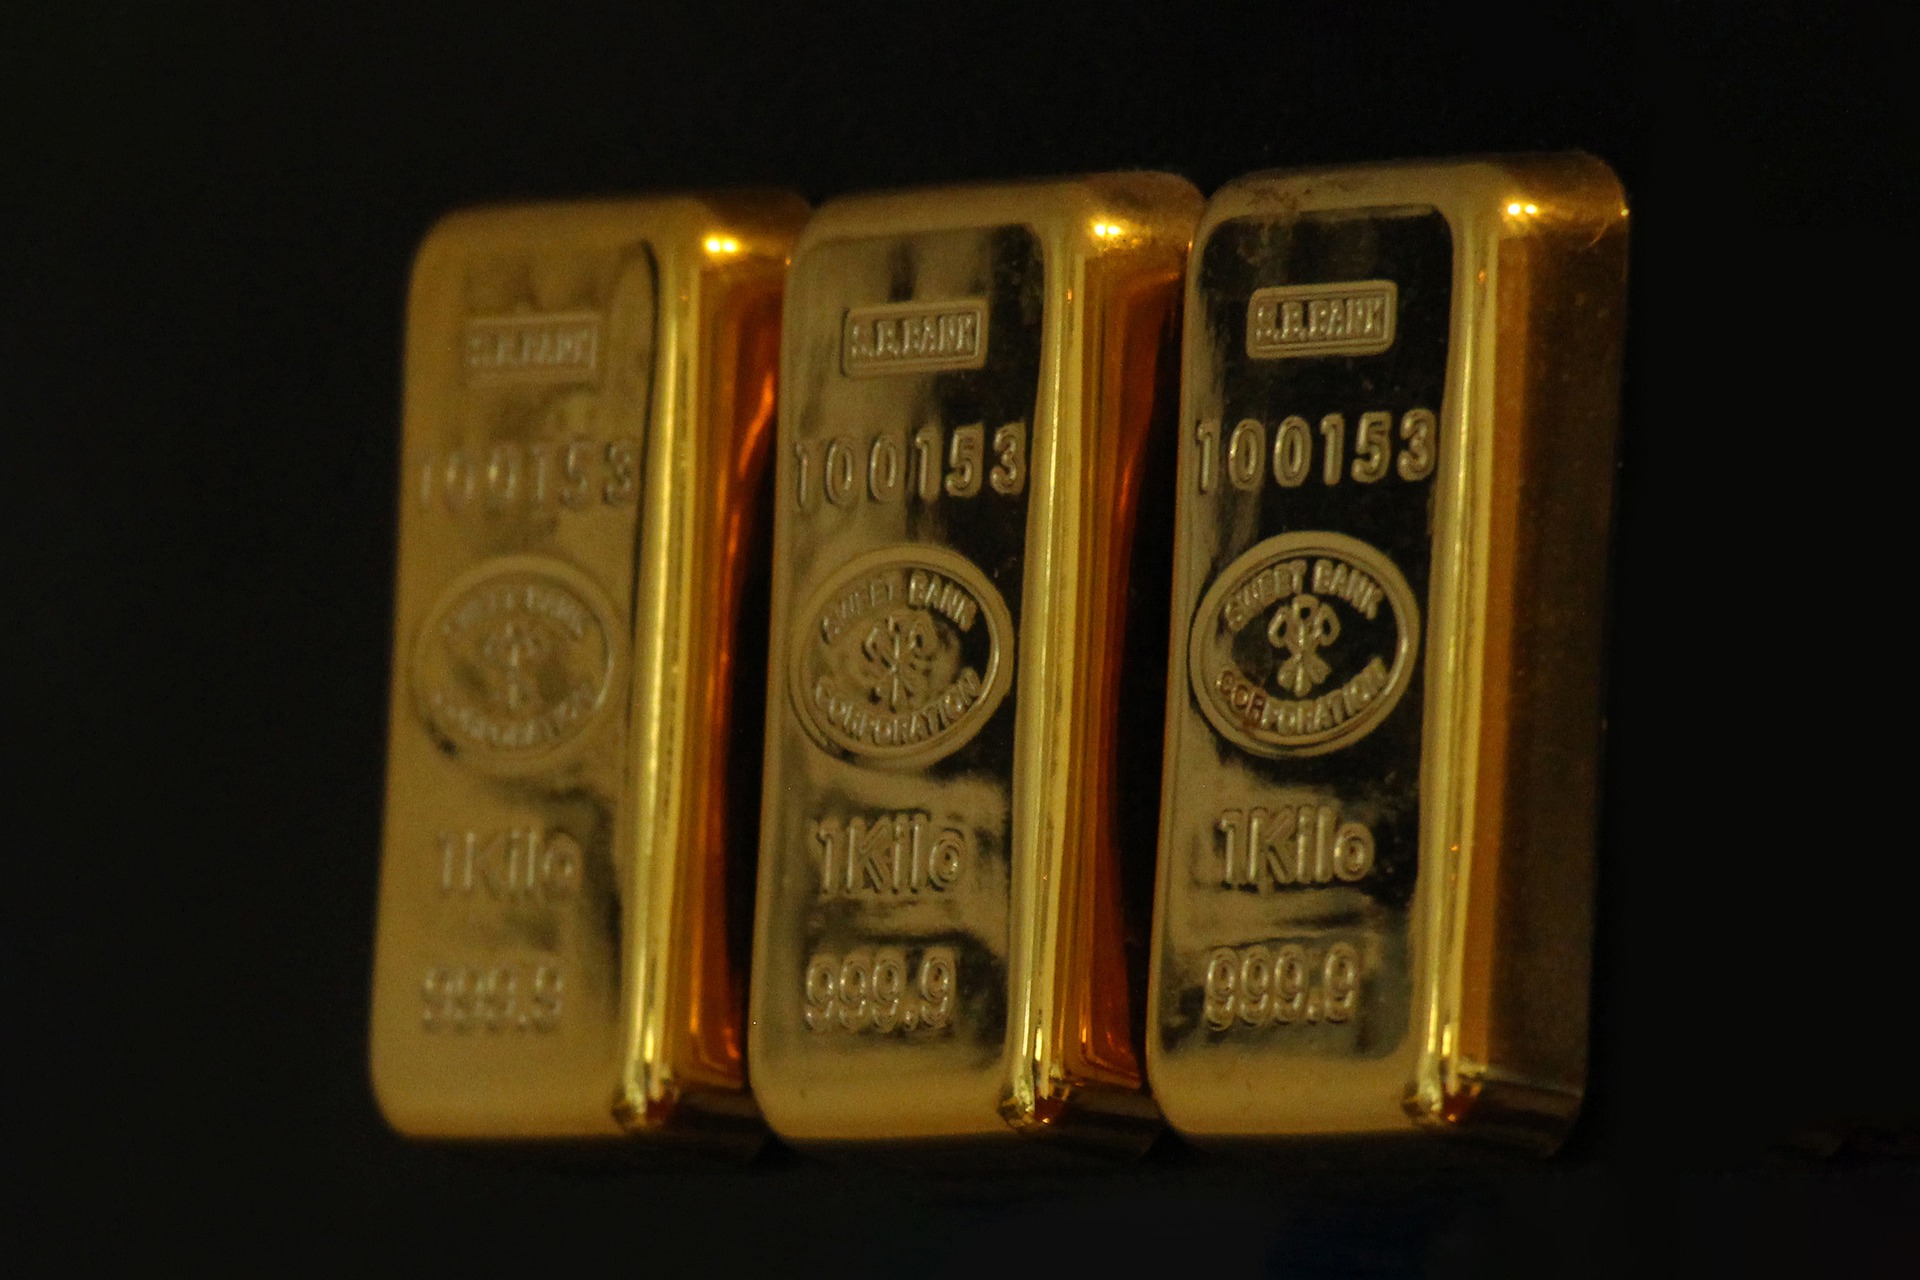 Pogo stick jump Vigilance Already Rekordowy import złota w Chinach! ChRL kupiła w styczniu 70 tys. kg